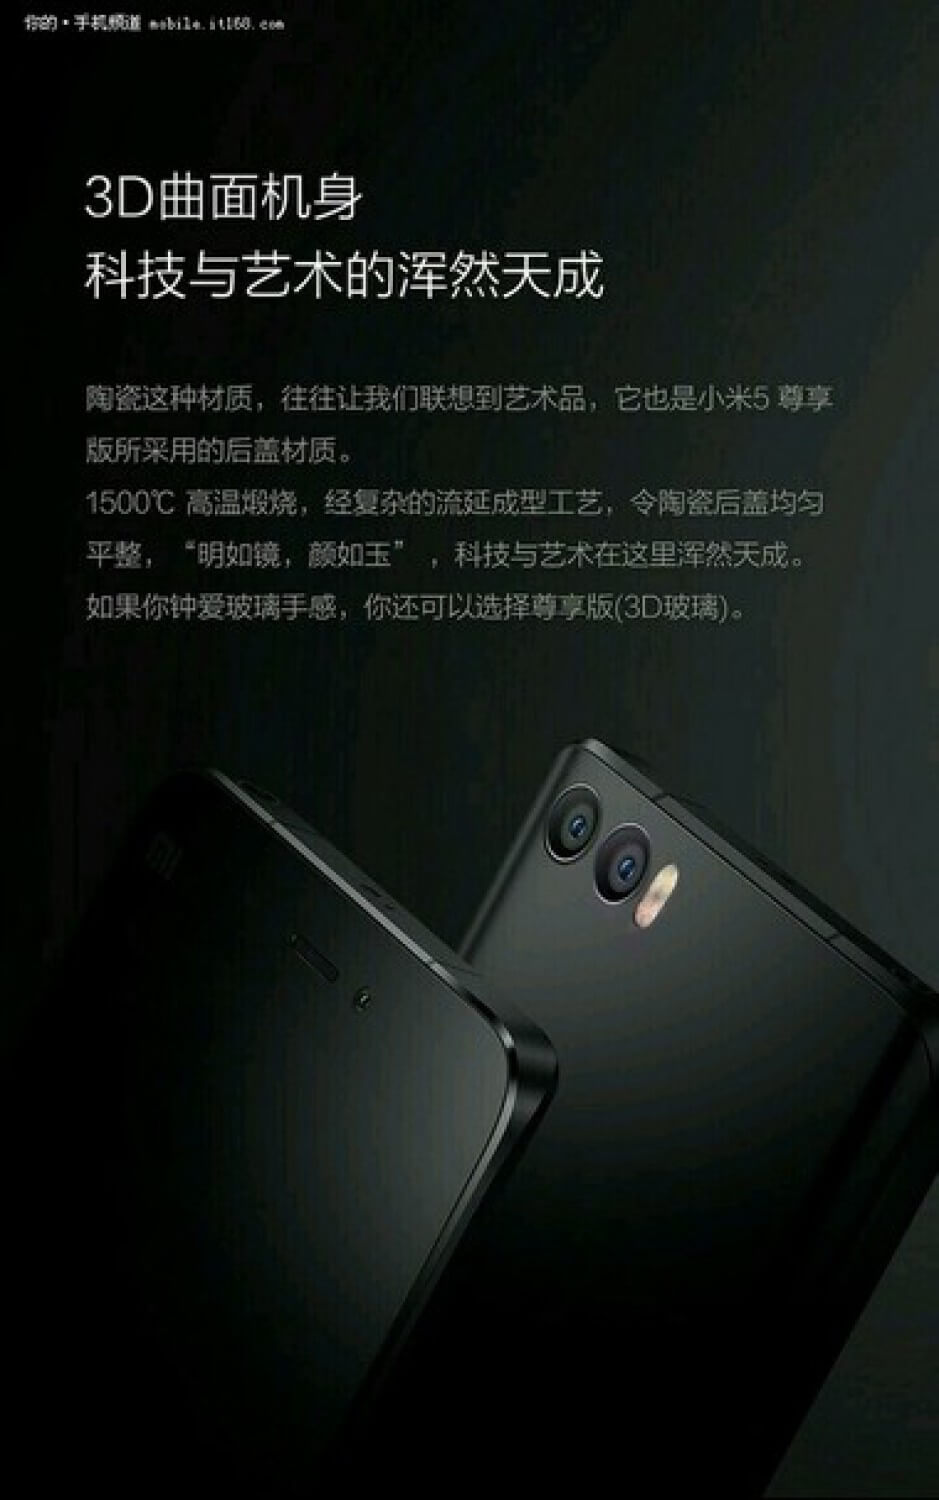 Как будет выглядеть Xiaomi Mi 5S с двойной камерой. Фото.